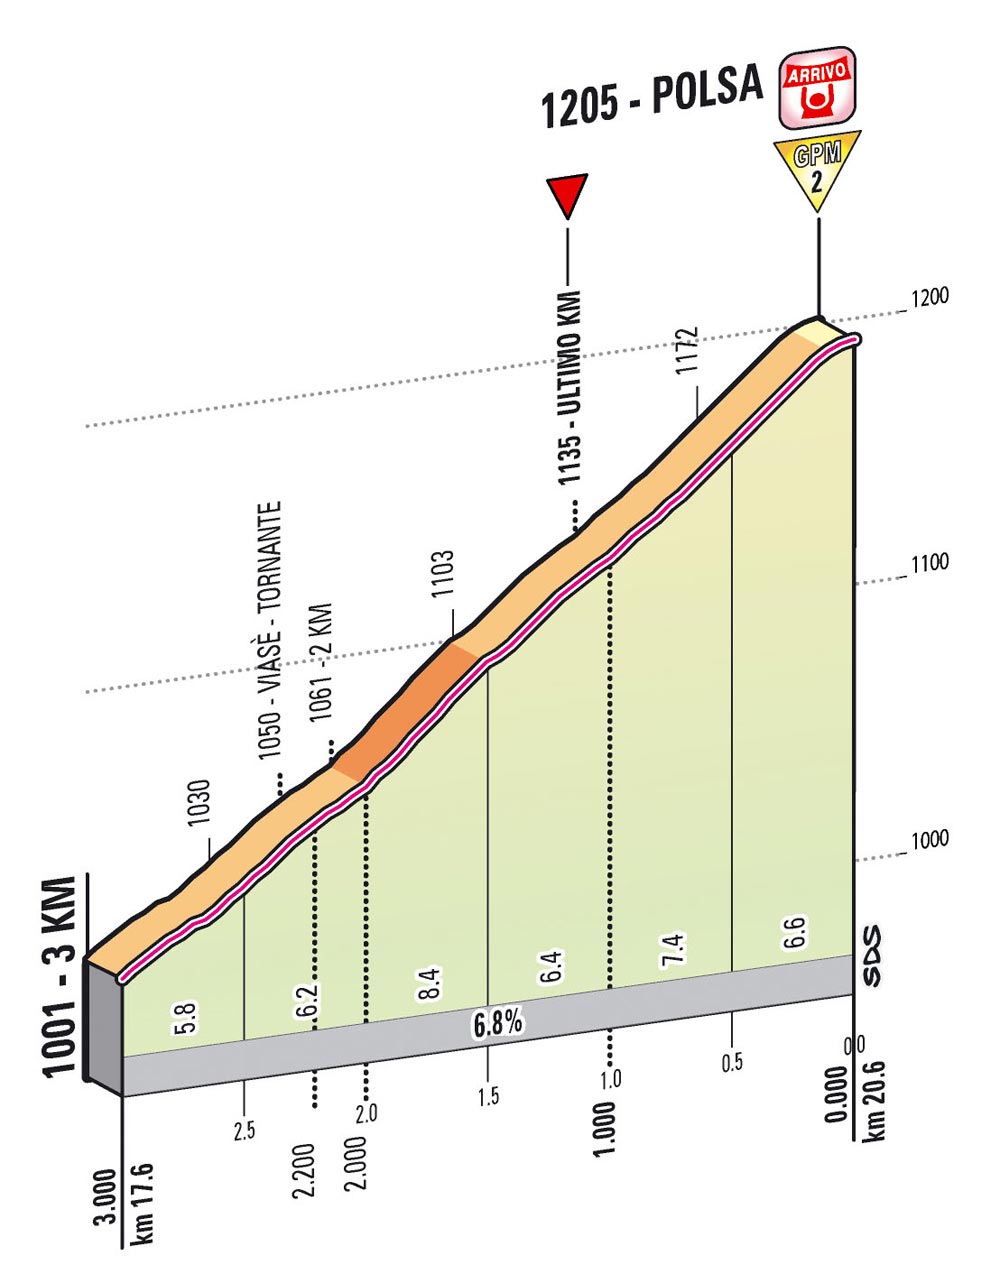 Giro d'Italia 2013 stage 18 last kms